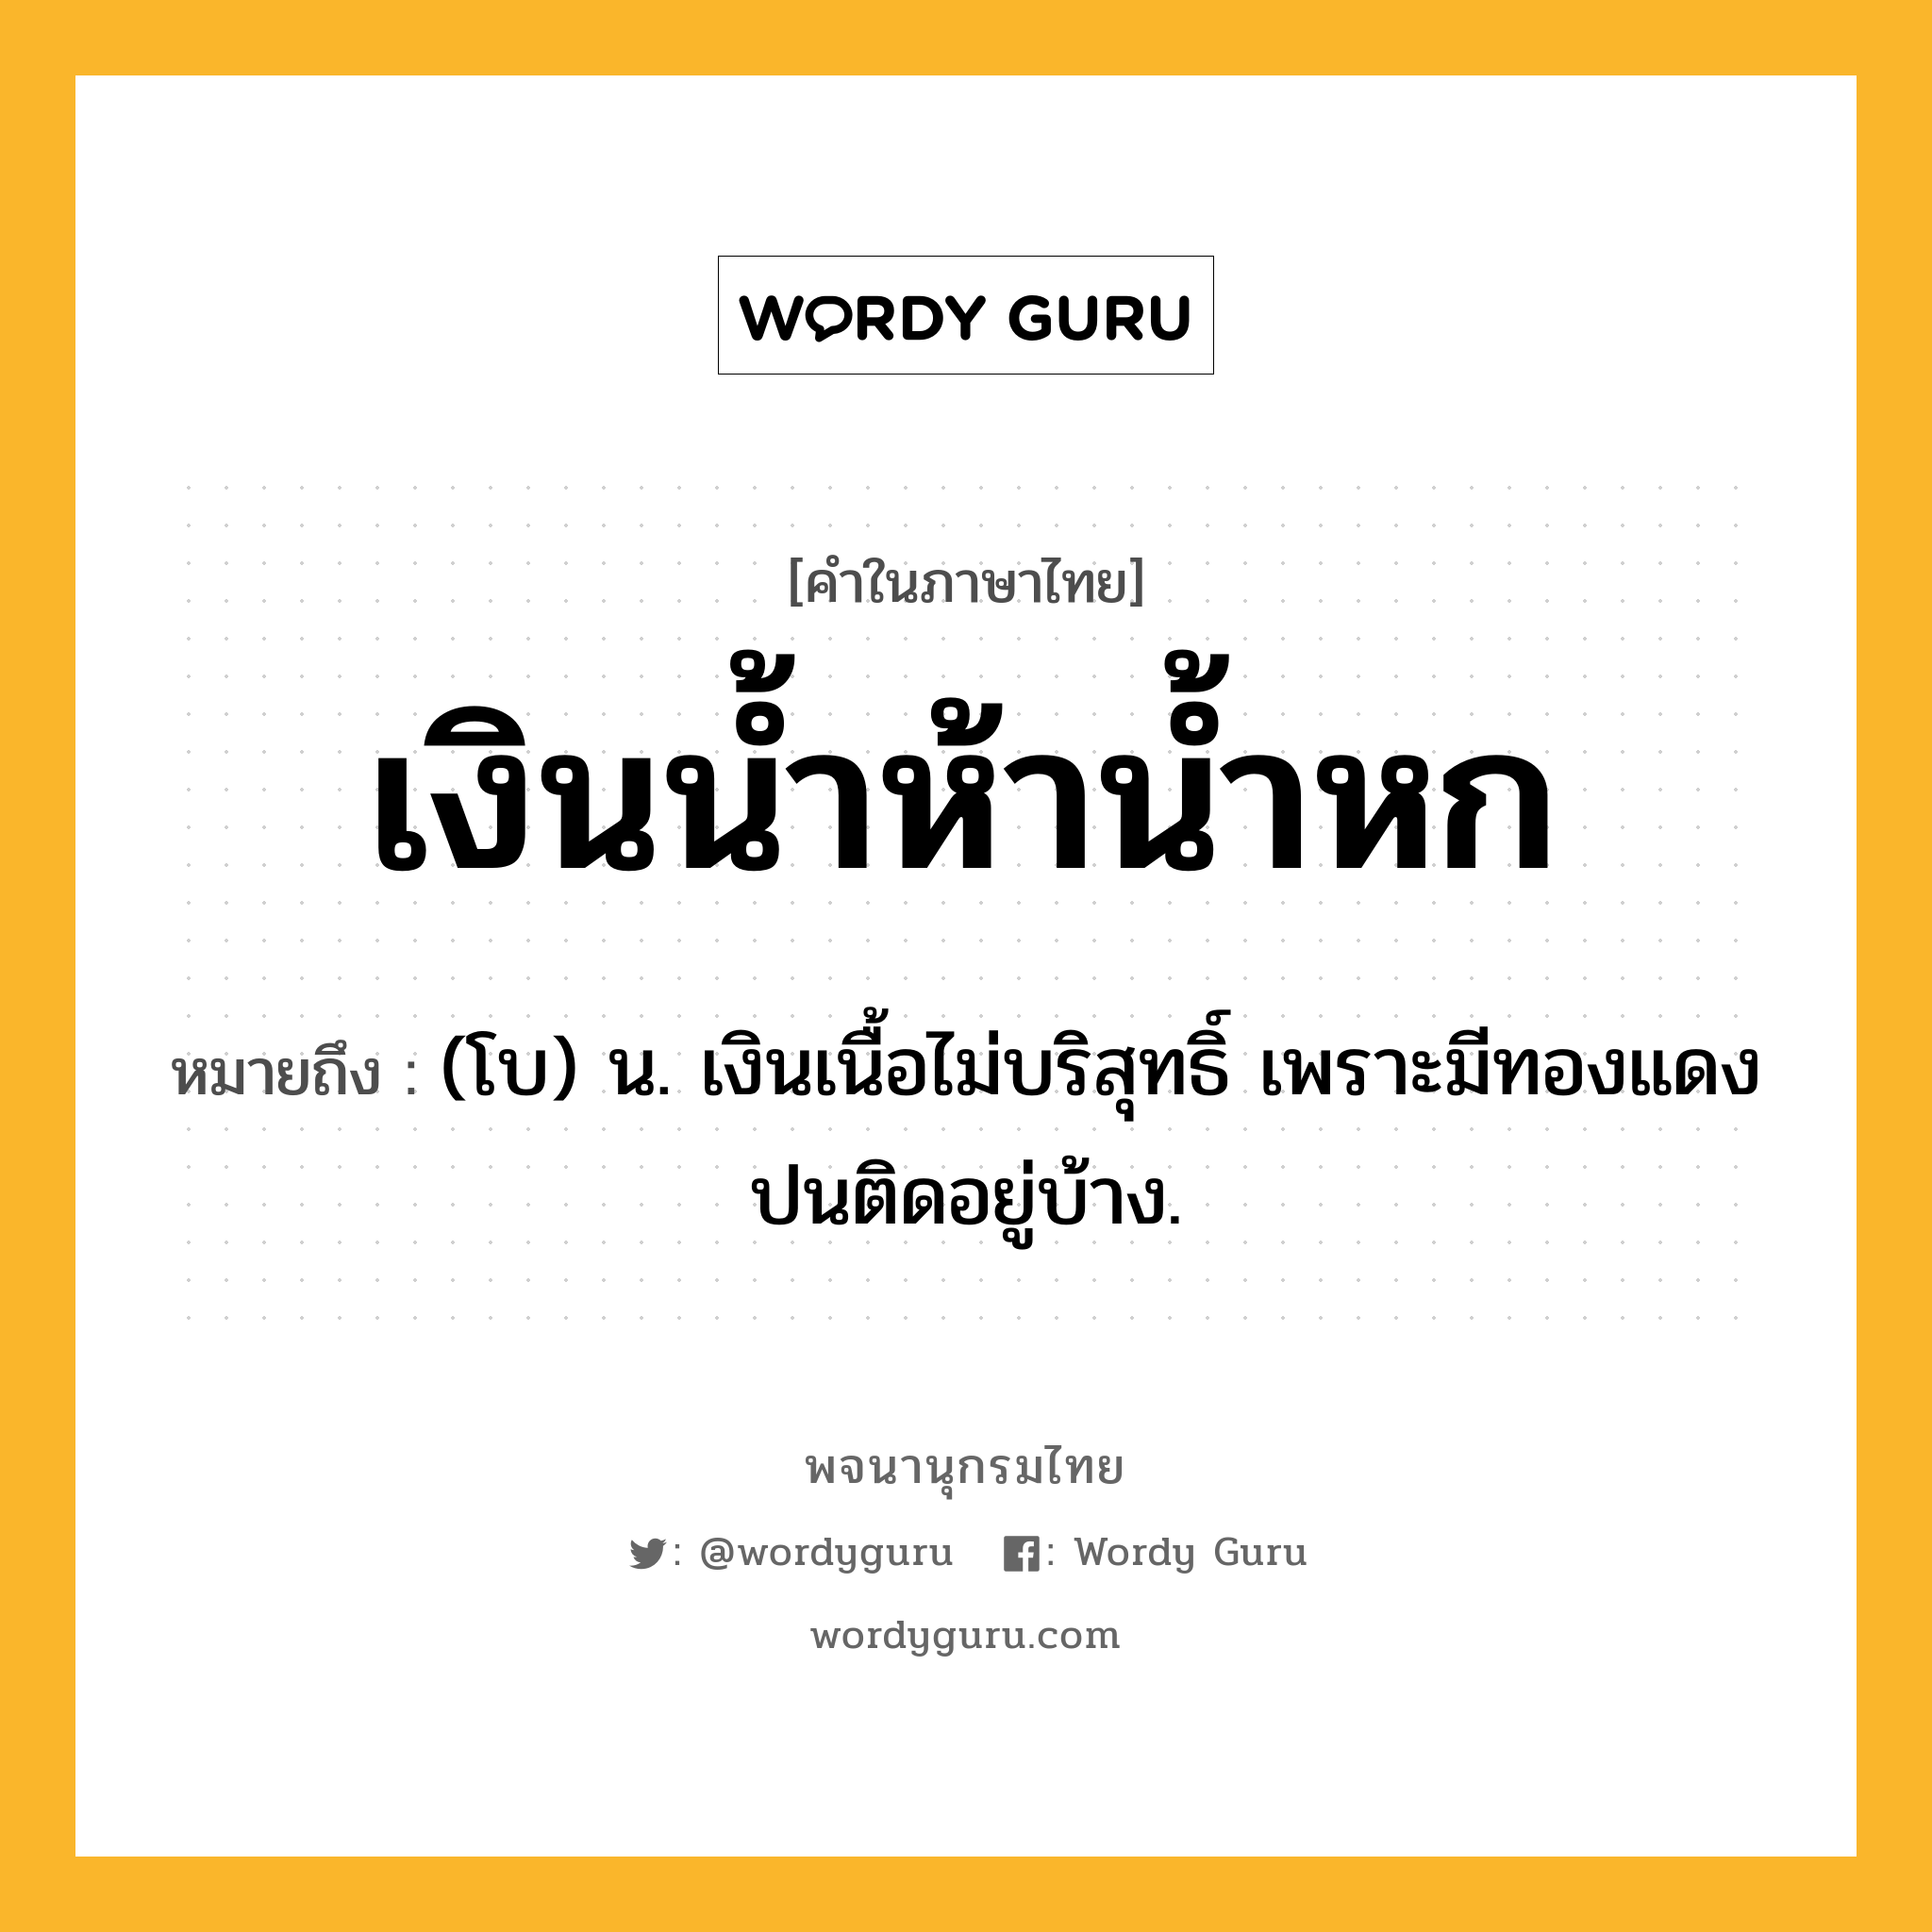 เงินน้ำห้าน้ำหก หมายถึงอะไร?, คำในภาษาไทย เงินน้ำห้าน้ำหก หมายถึง (โบ) น. เงินเนื้อไม่บริสุทธิ์ เพราะมีทองแดงปนติดอยู่บ้าง.